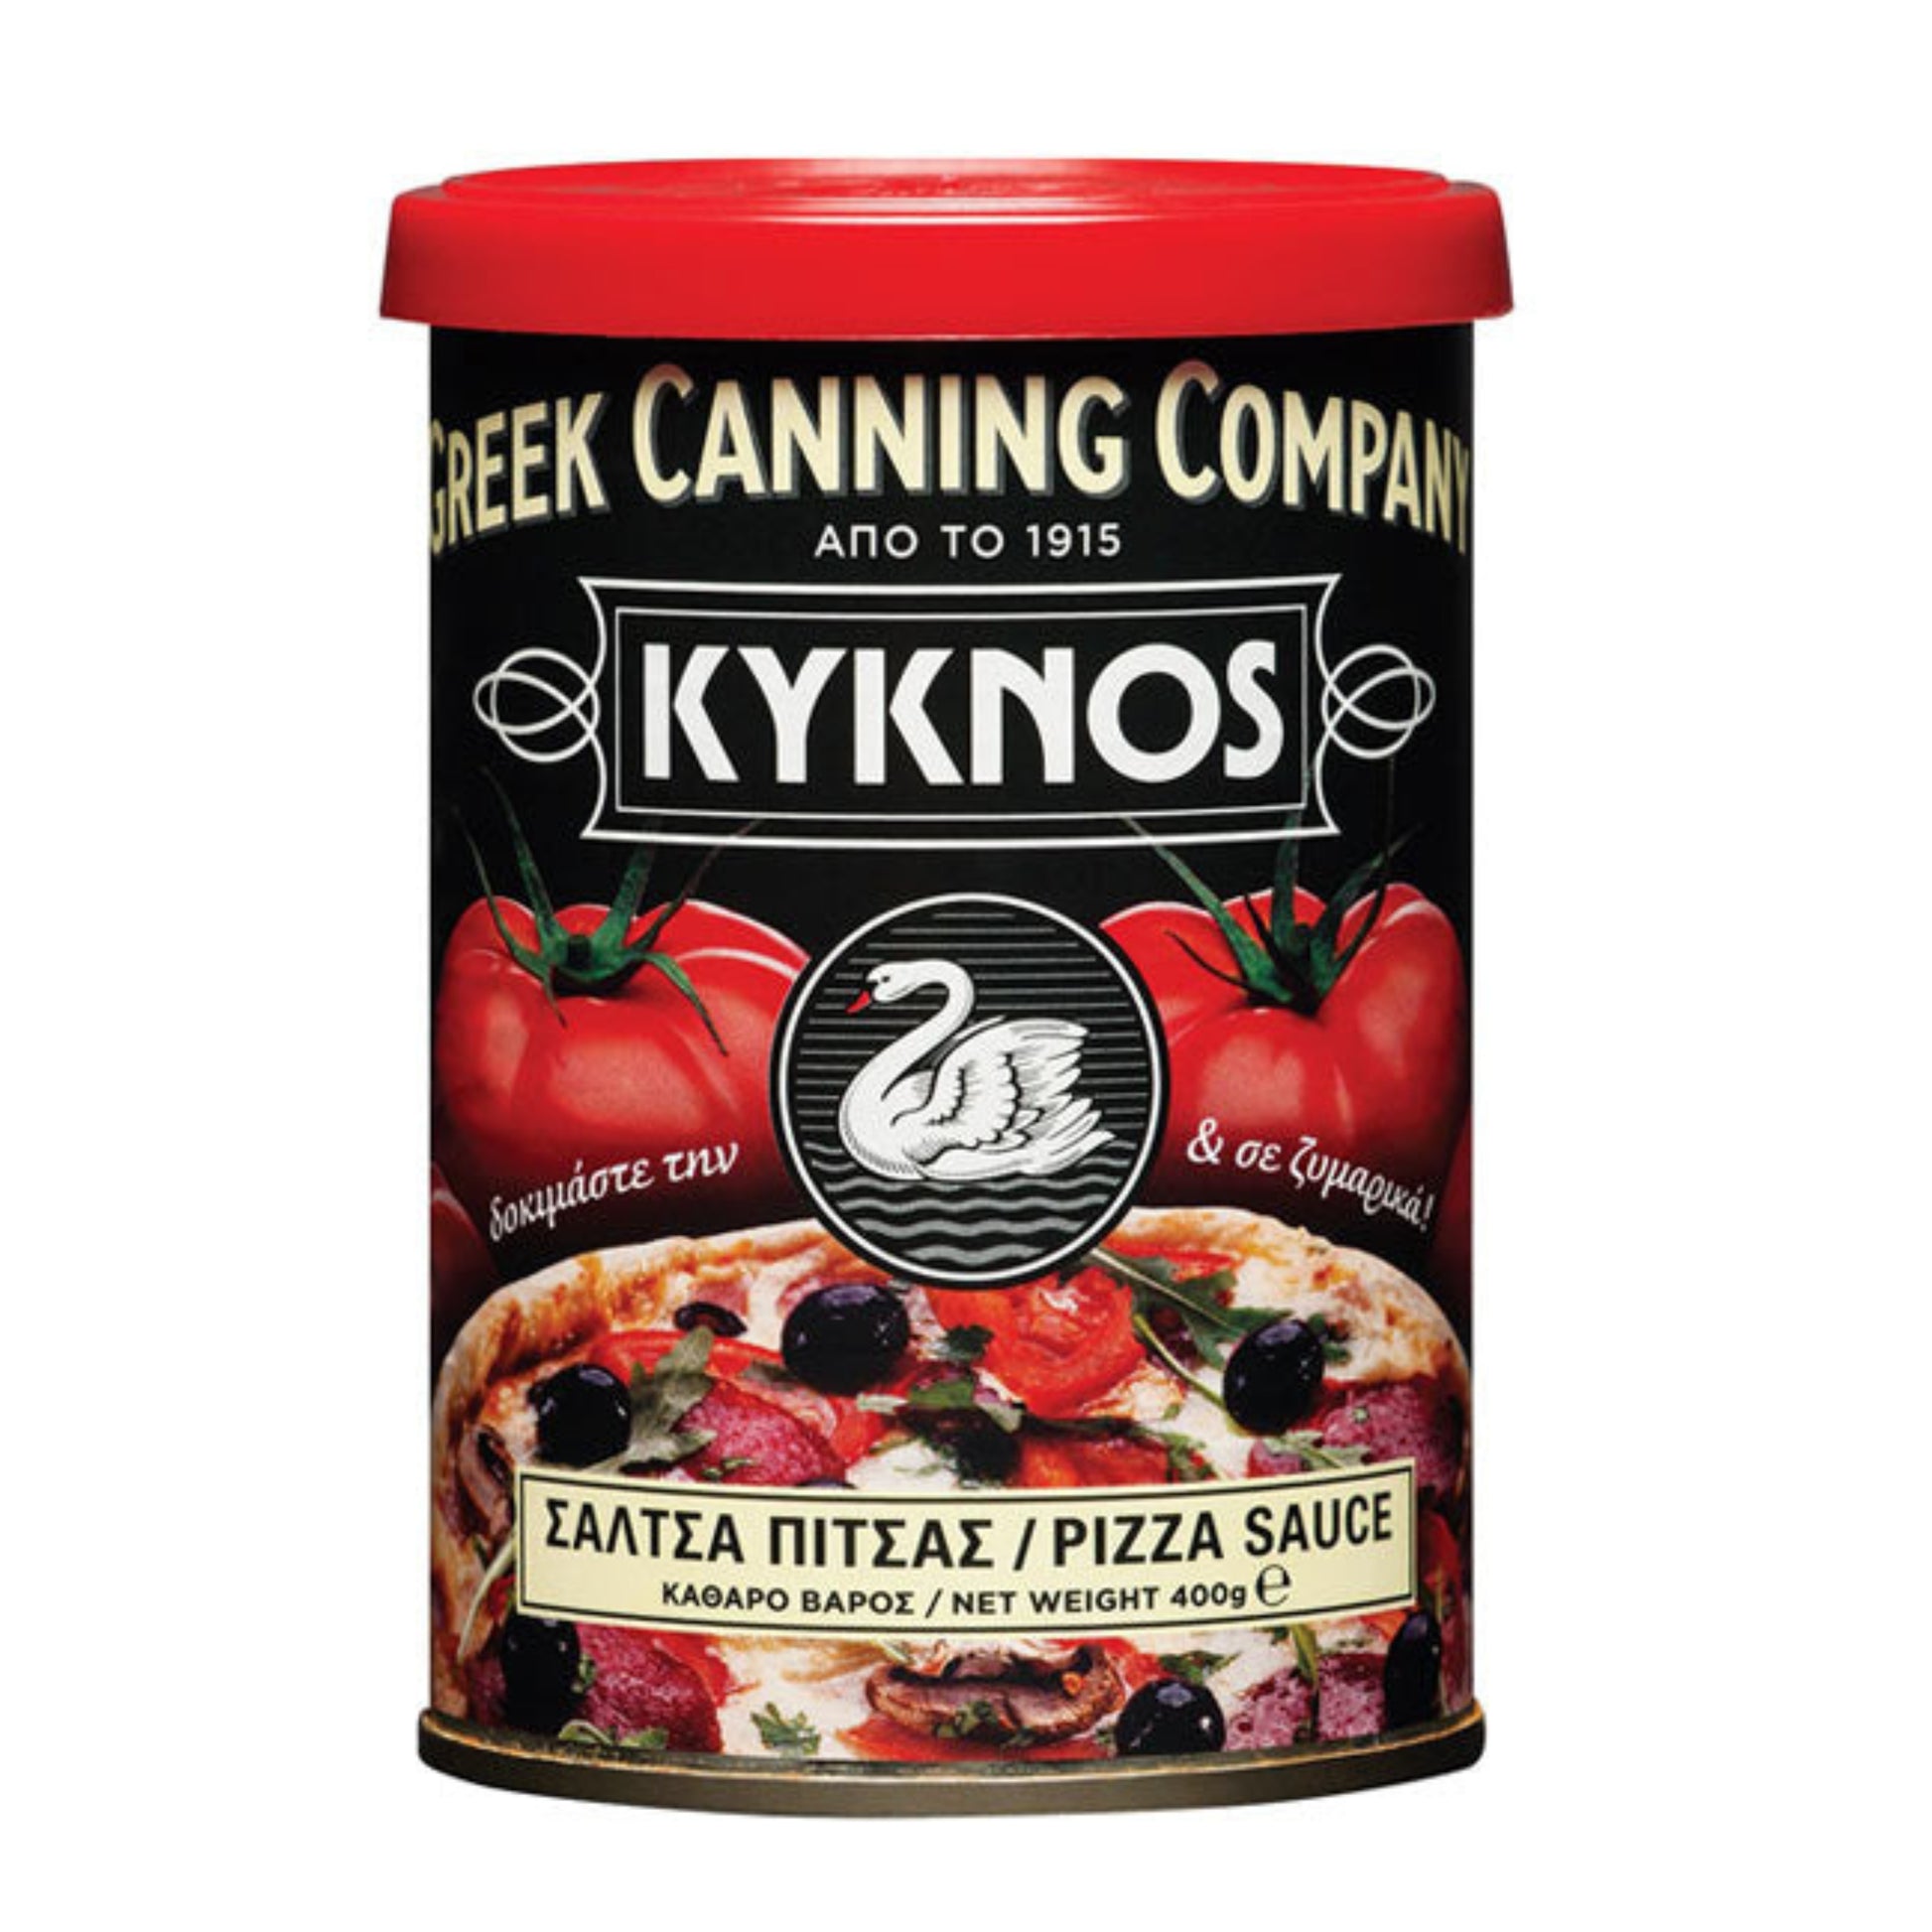 griechische-lebensmittel-griechische-produkte-sosse-fuer-pizza-und-pasta-400g-kyknos